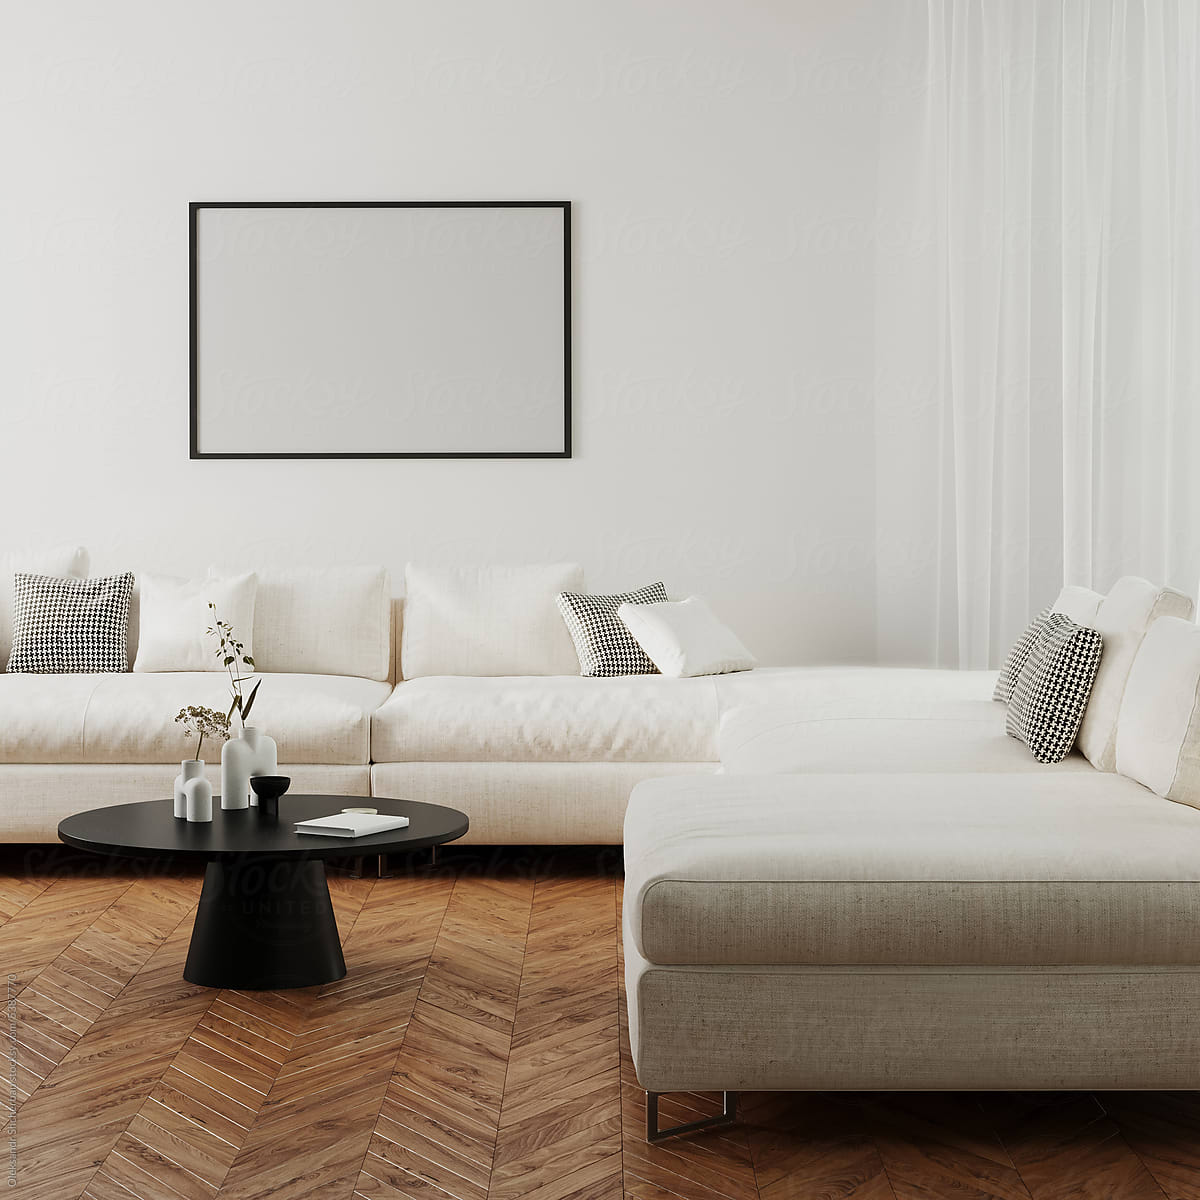 Horizontal picture frame mock up in elegant room interior, 3d render